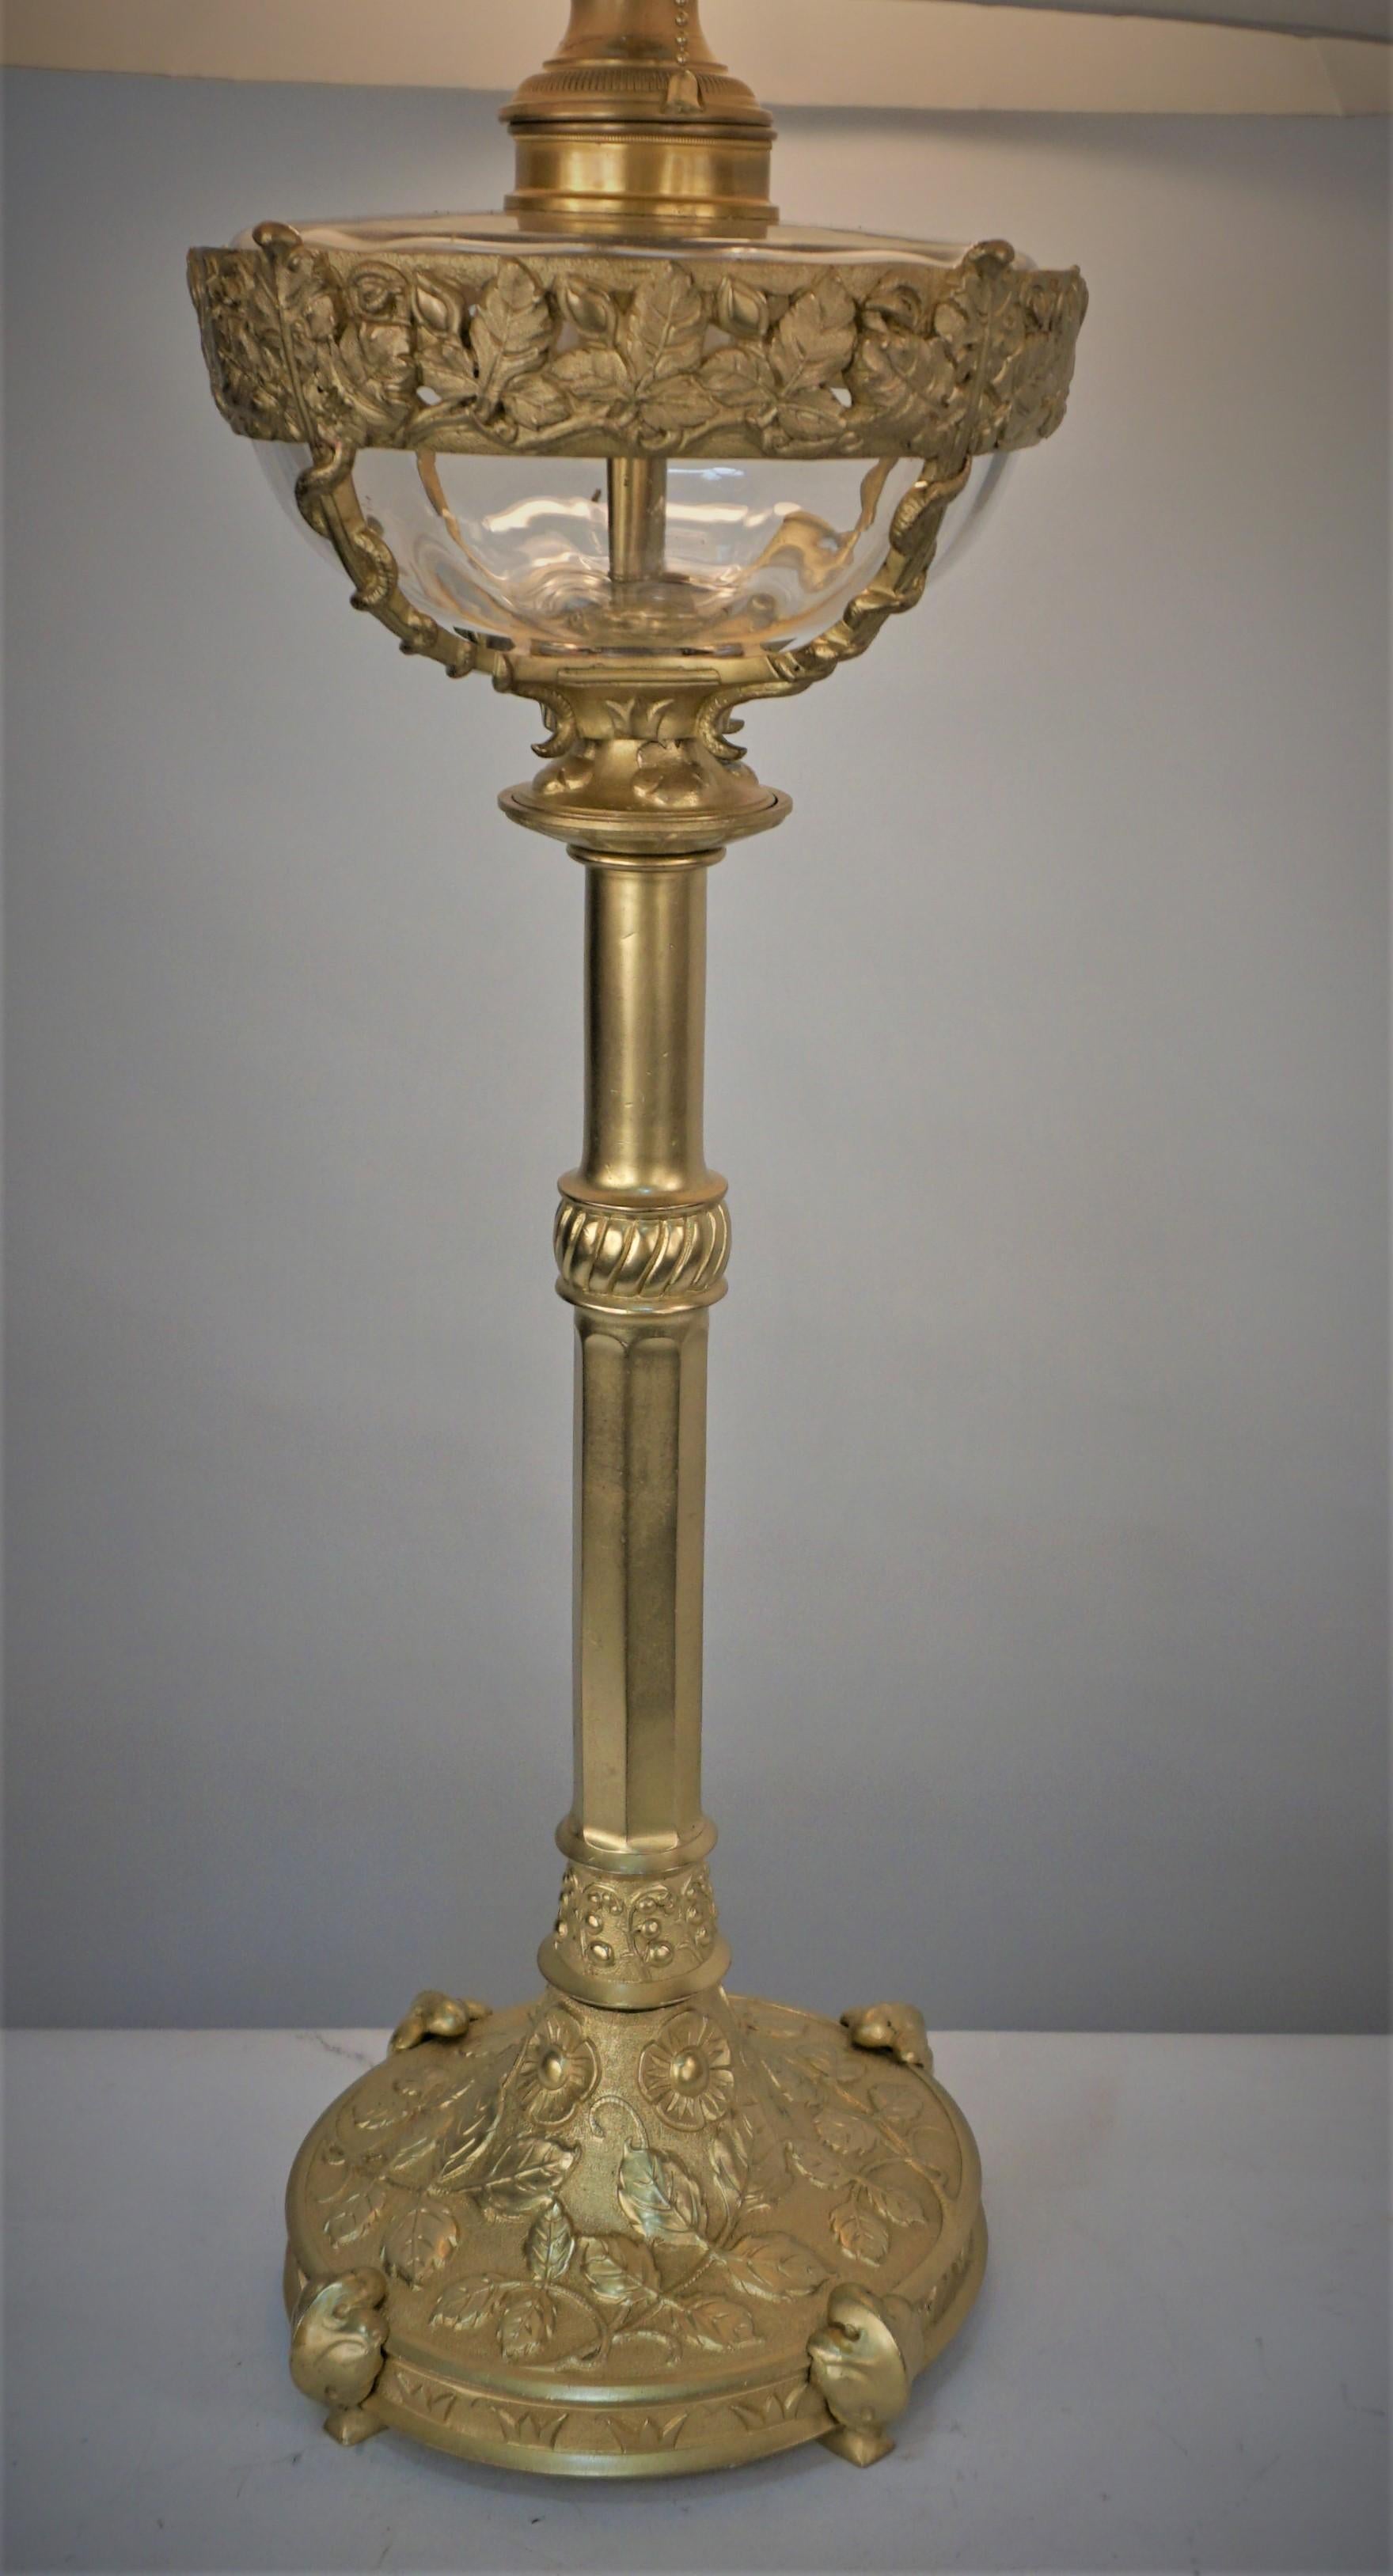 Wunderschöne Öllampe aus Bronze und Kristall aus dem 19. Jahrhundert wurde professionell mit einer doppelten Kettensteckdose elektrifiziert und mit einem handgefertigten, gefalteten Seidenlampenschirm ausgestattet.
Die Maße umfassen den